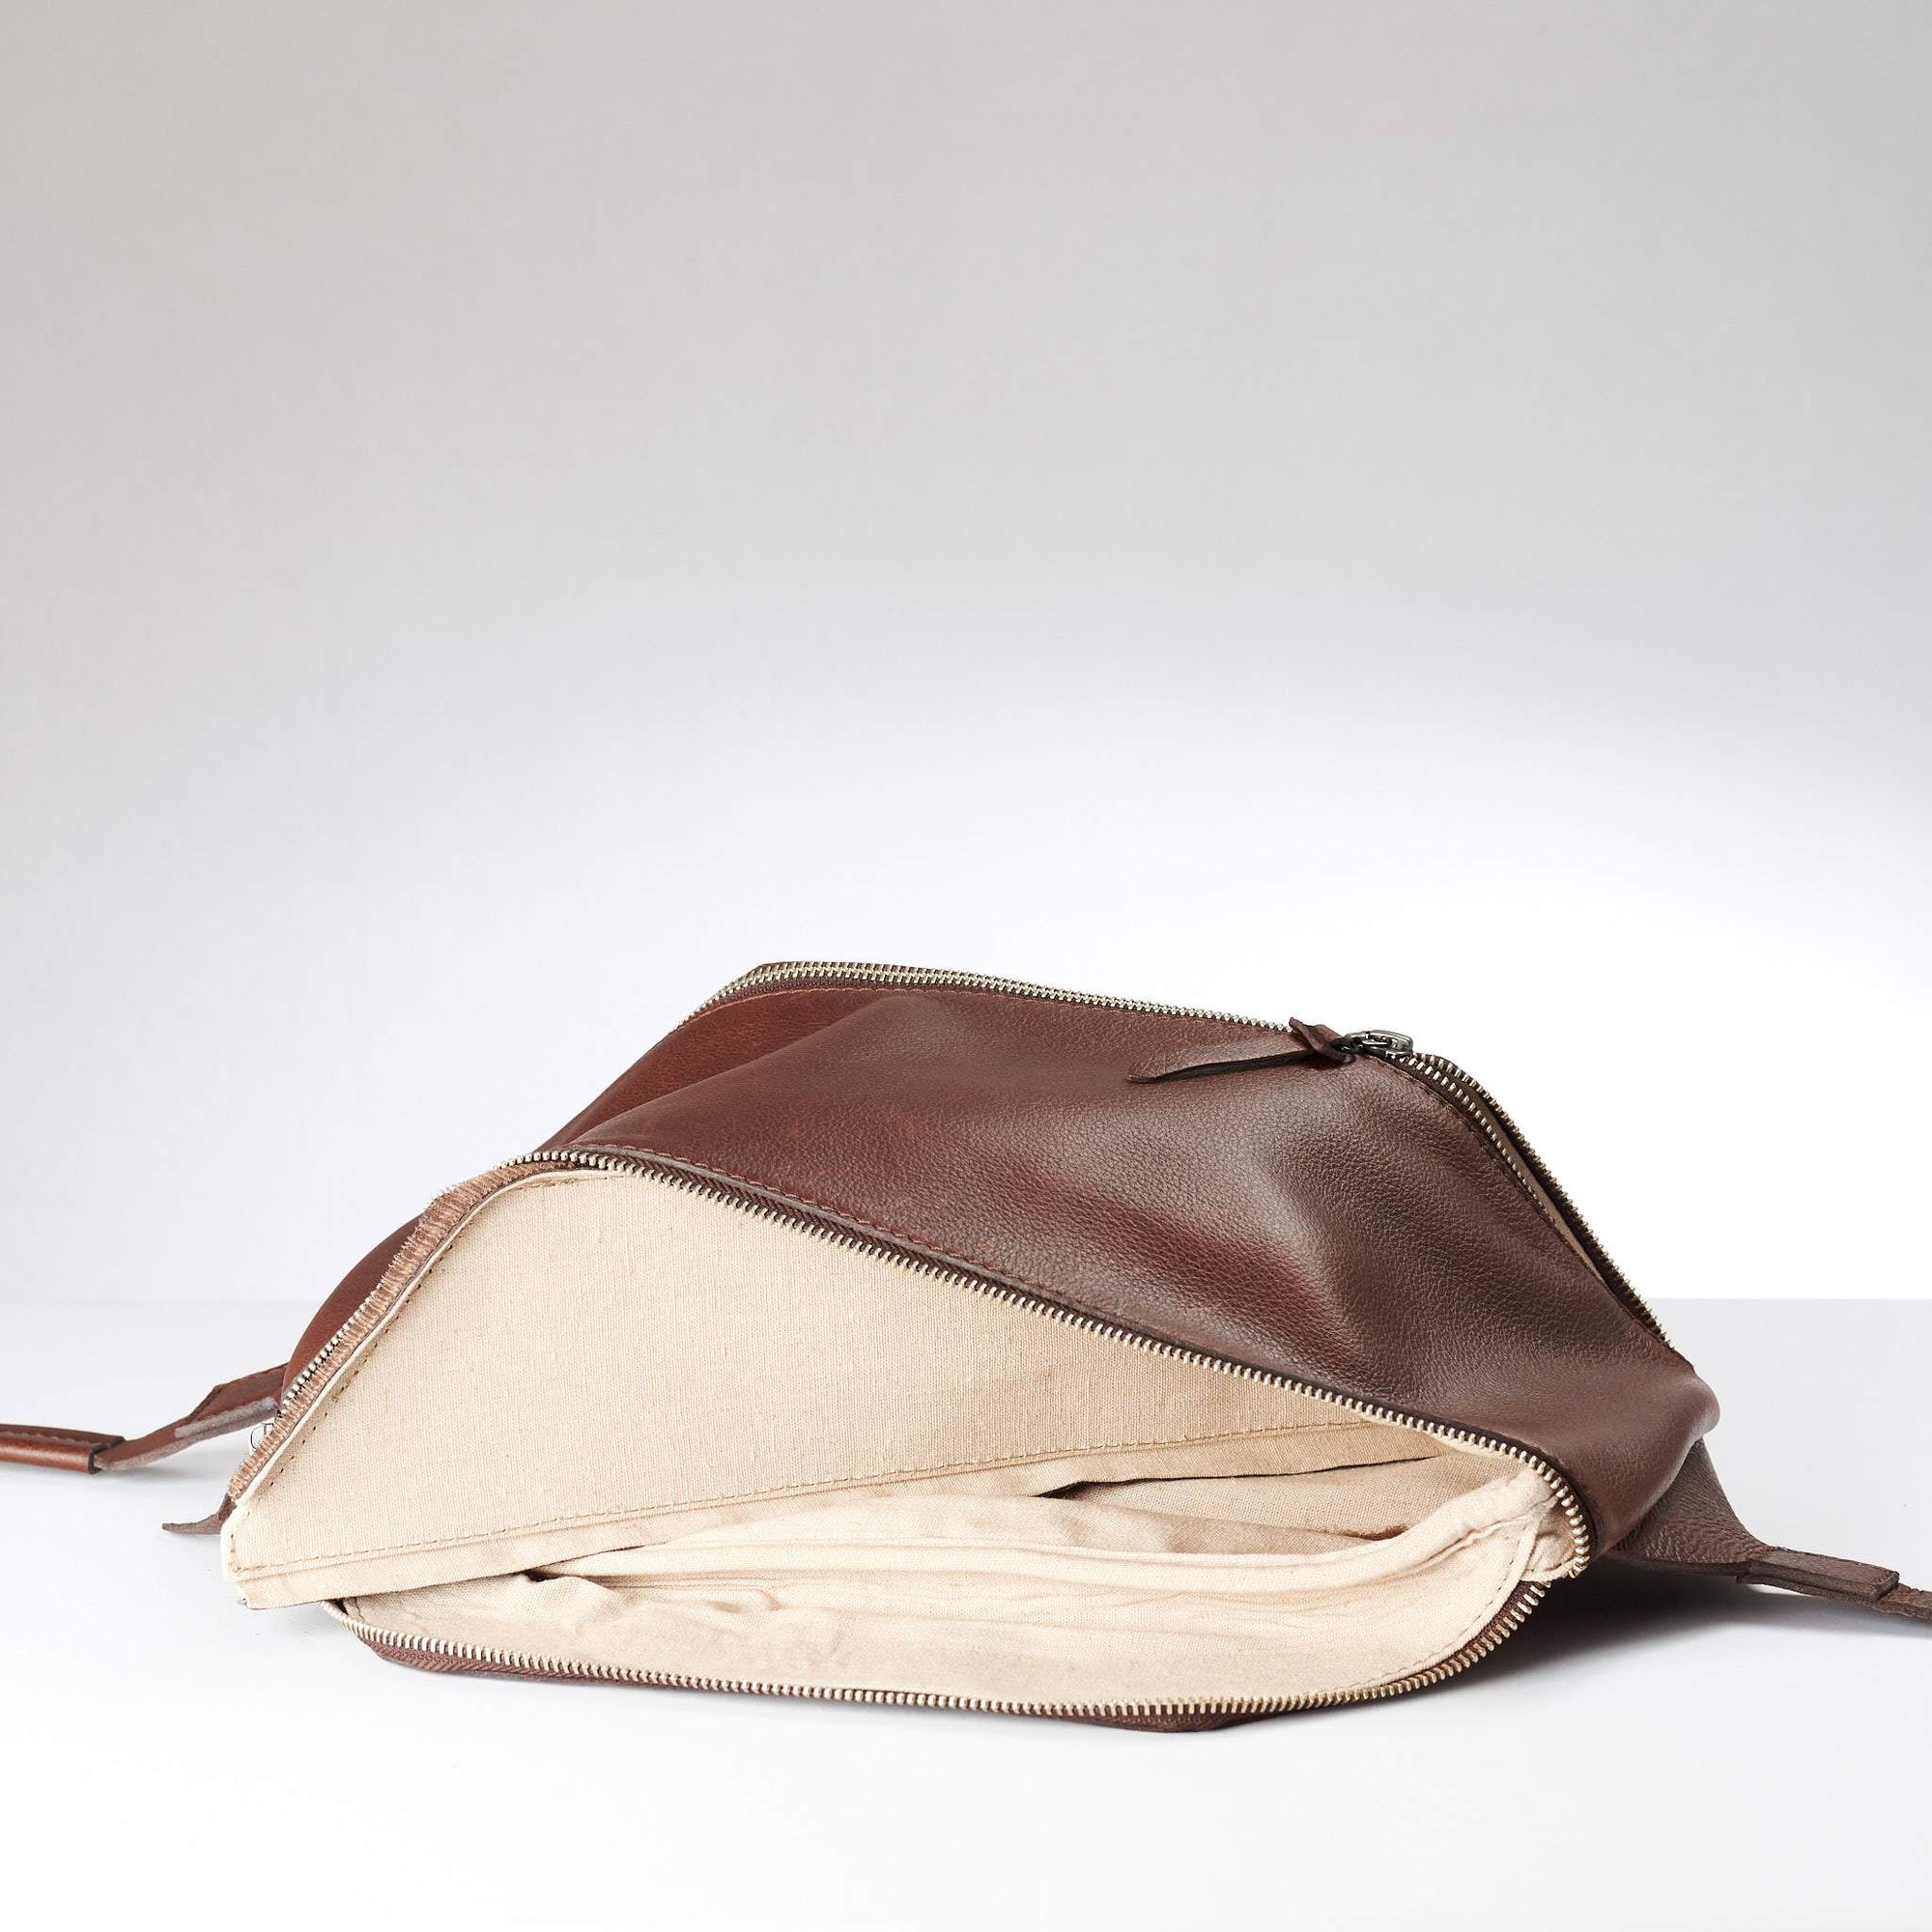 Shoulder bag interior detachable divider. Fenek Sling Bag Brown by Capra Leather